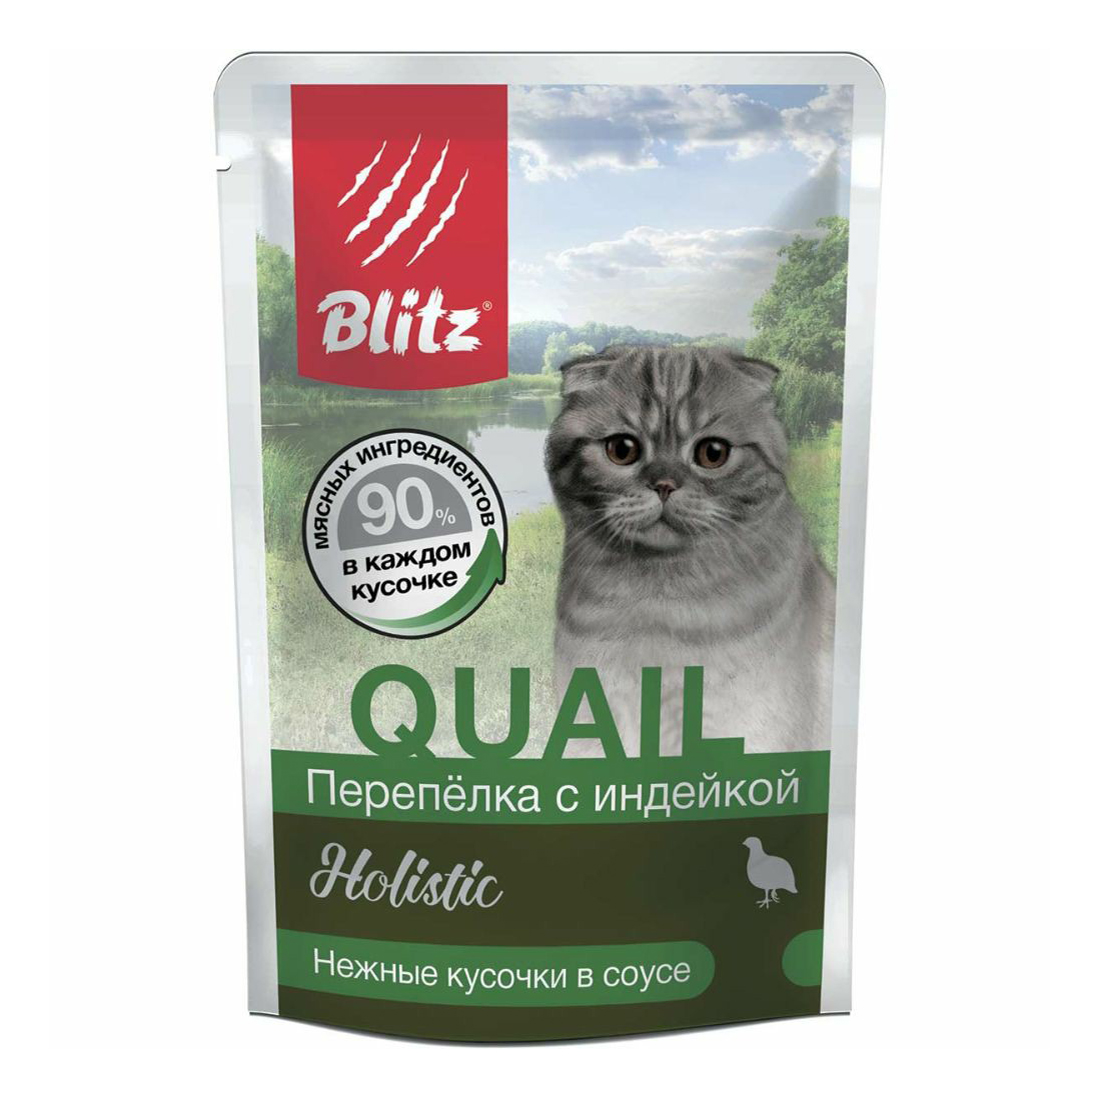 Влажный корм для кошек Blitz Quail Holistic, перепелка с индейкой, 24 шт по 85 г